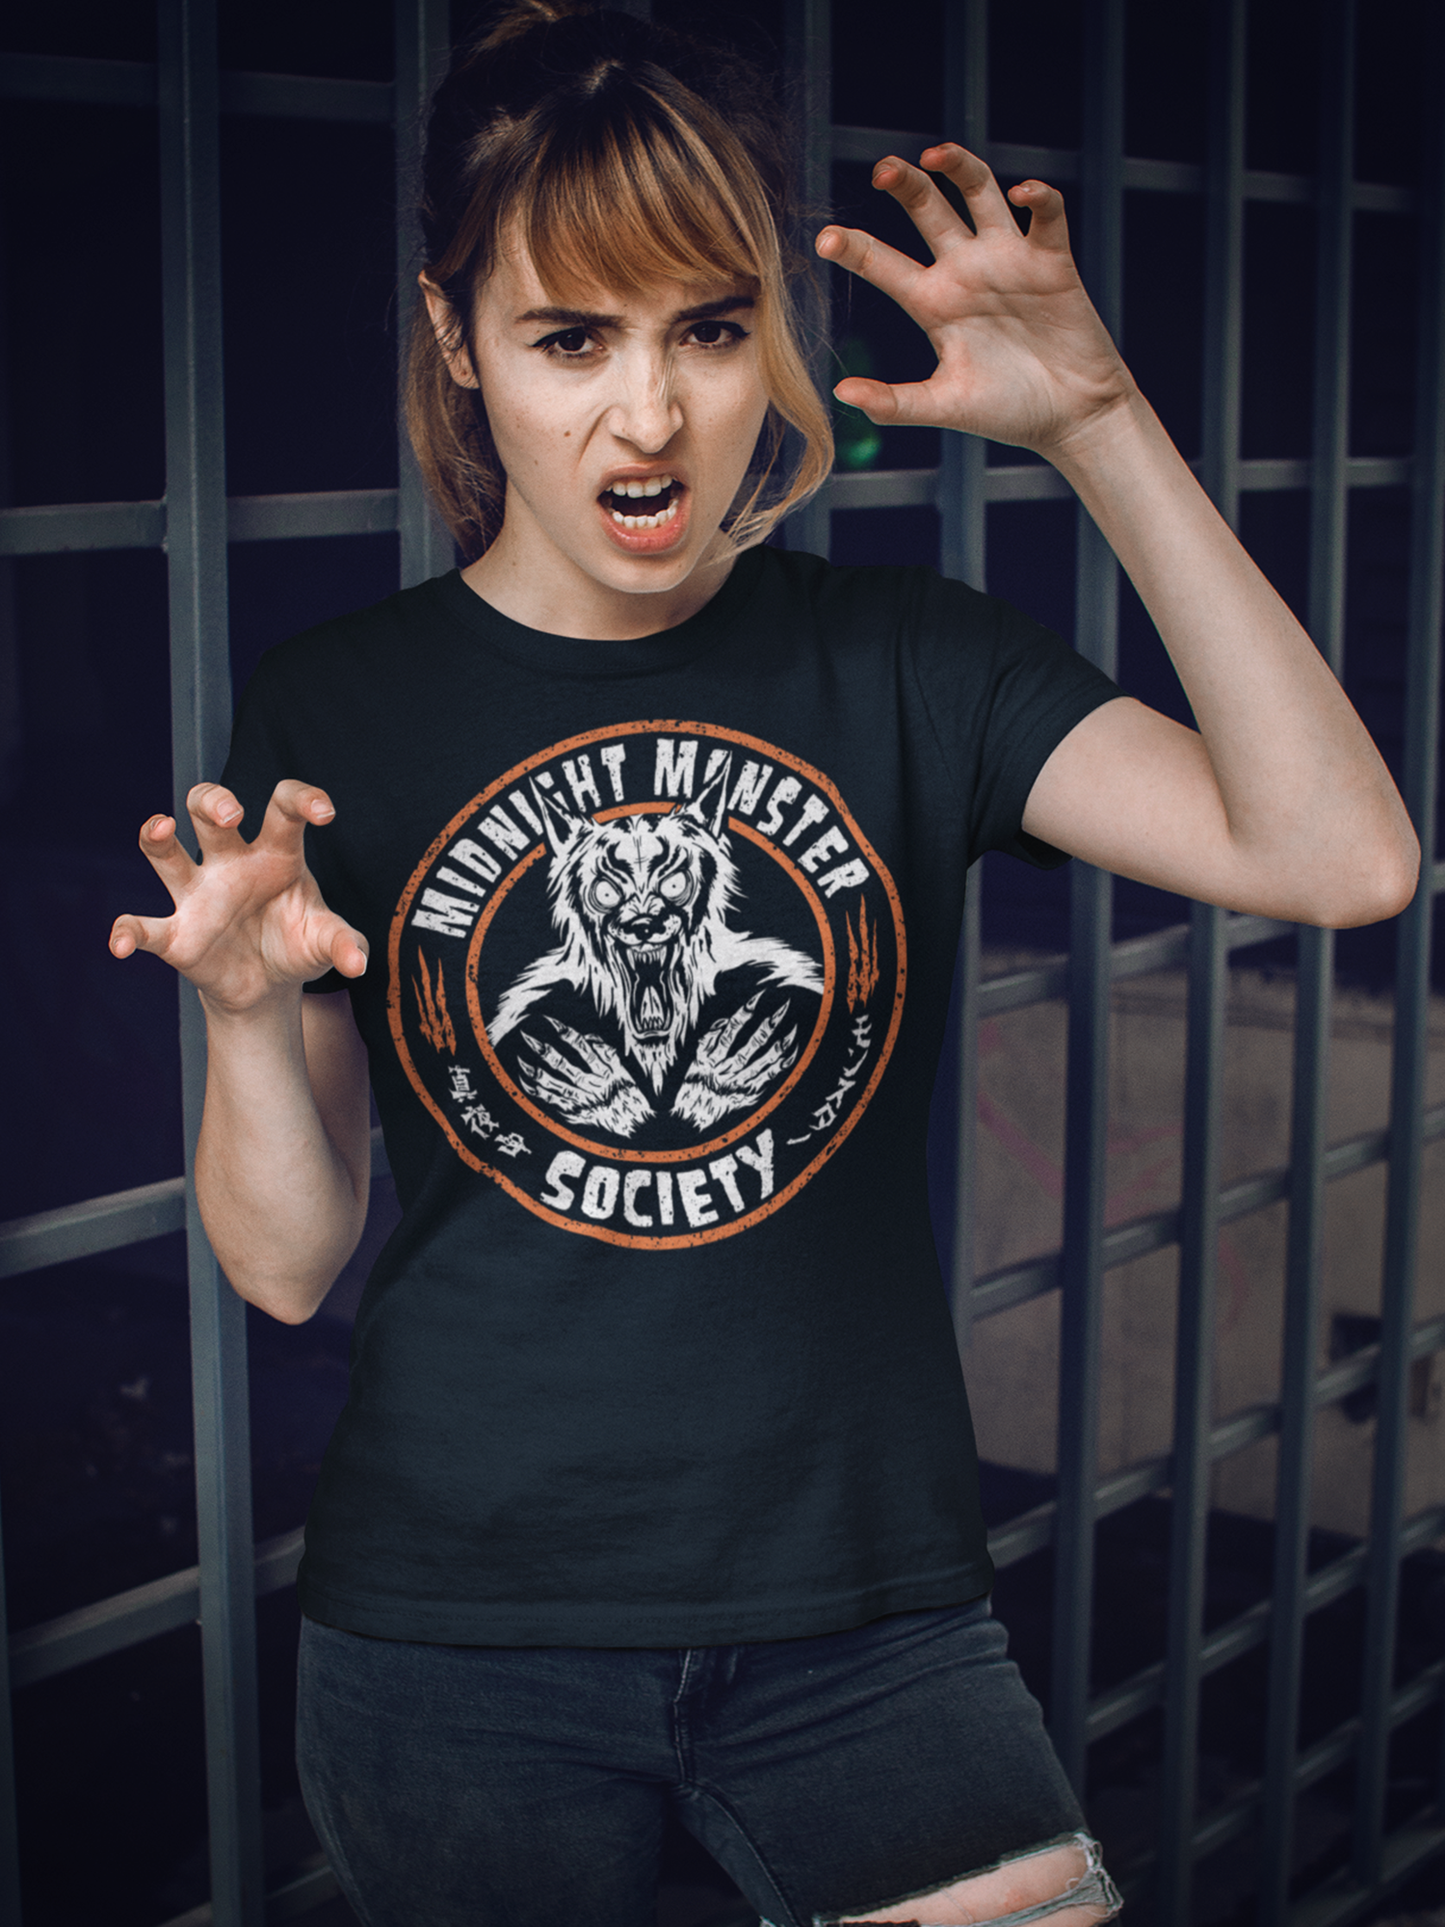 Midnight Monster Society, Werewolf Fiend T-shirt